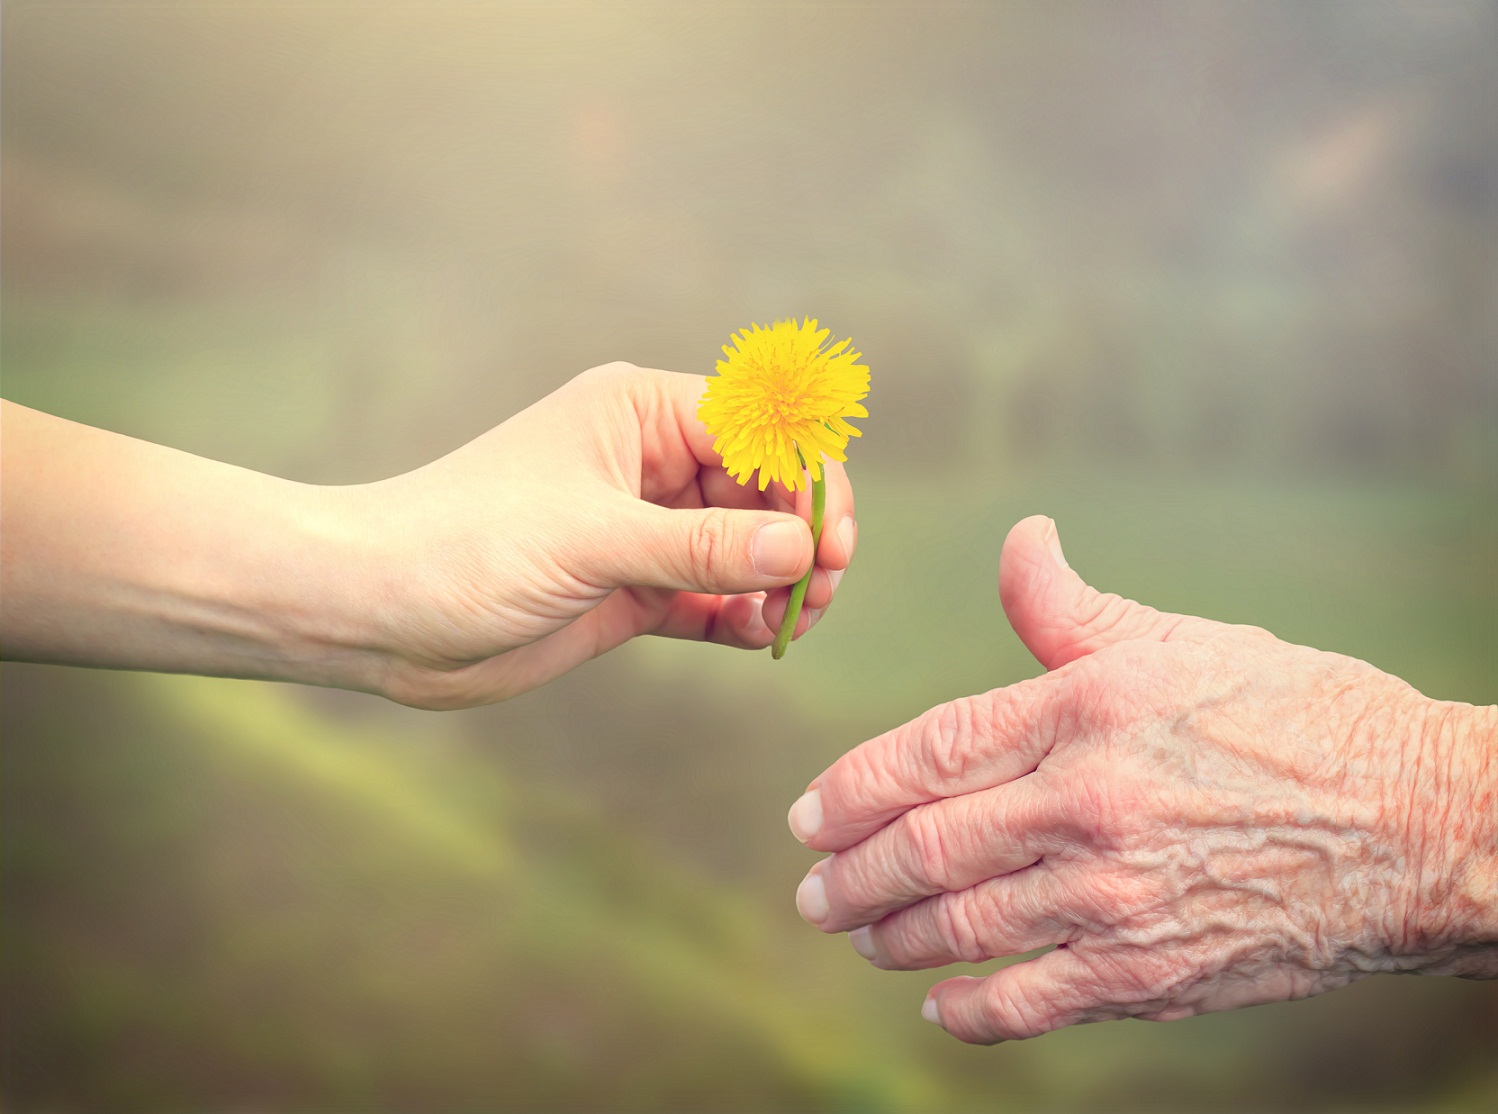 handing a flower to an older woman